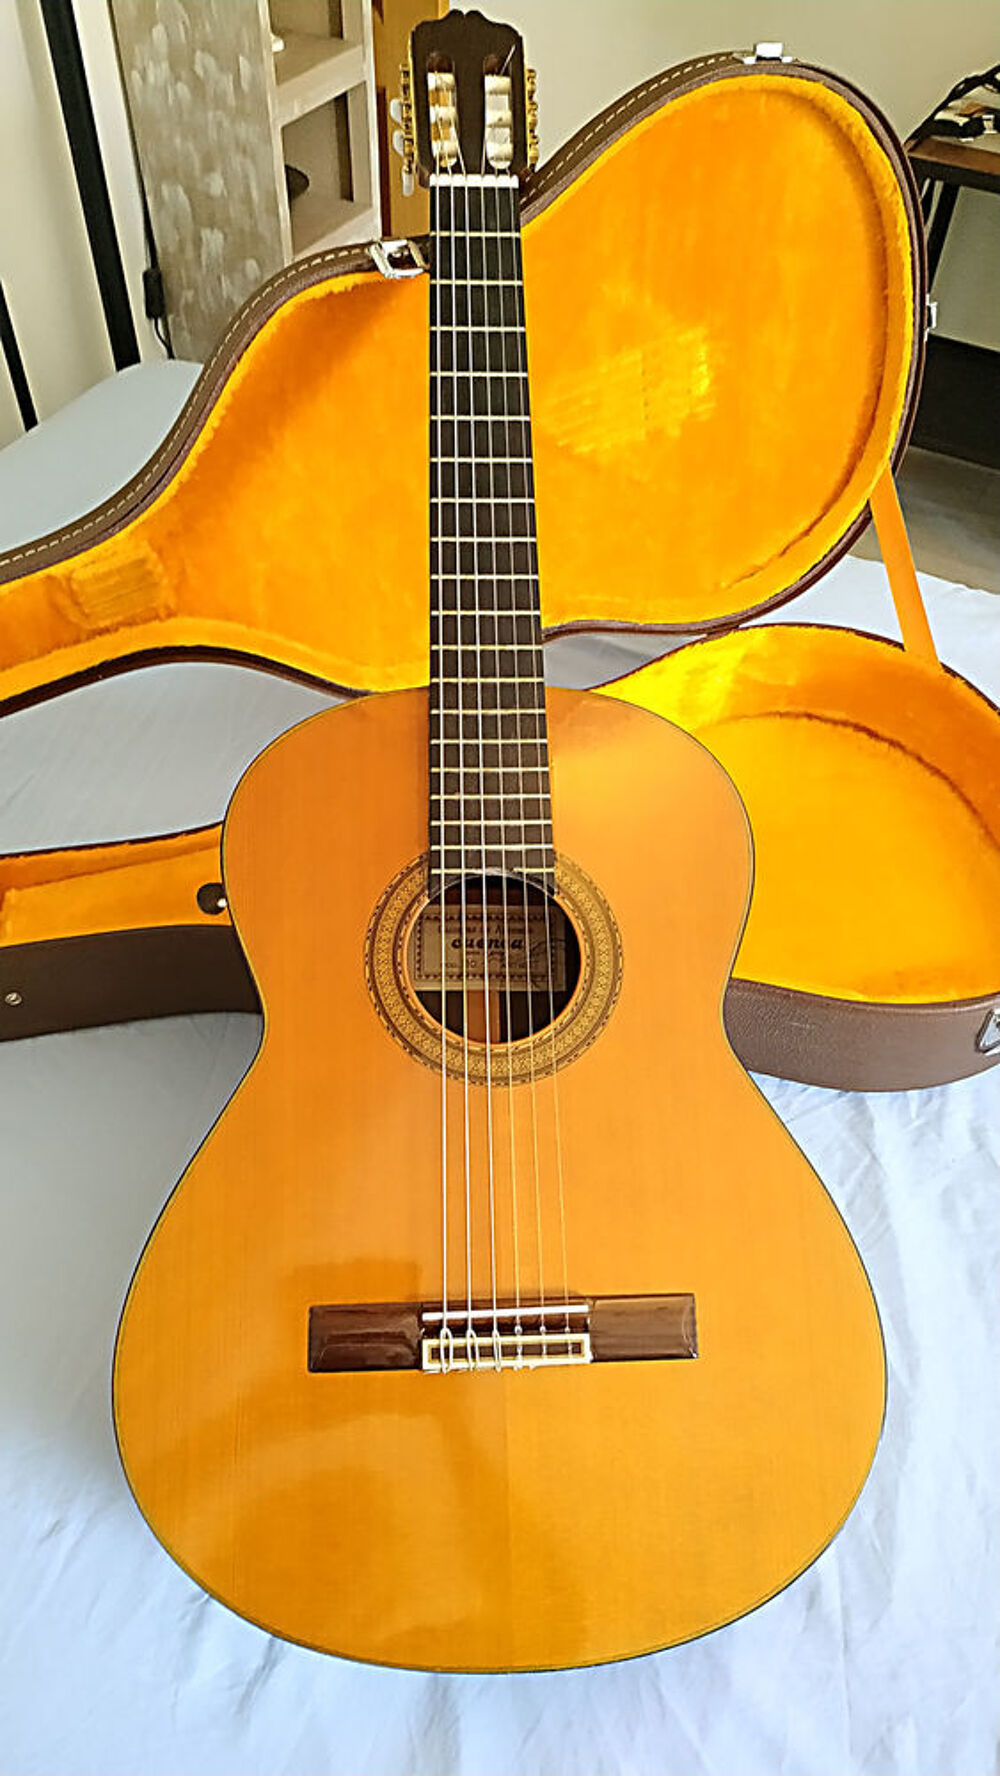 Guitare espagnol M110 (1981) Guitarras de Artesiania CUENCA. Instruments de musique